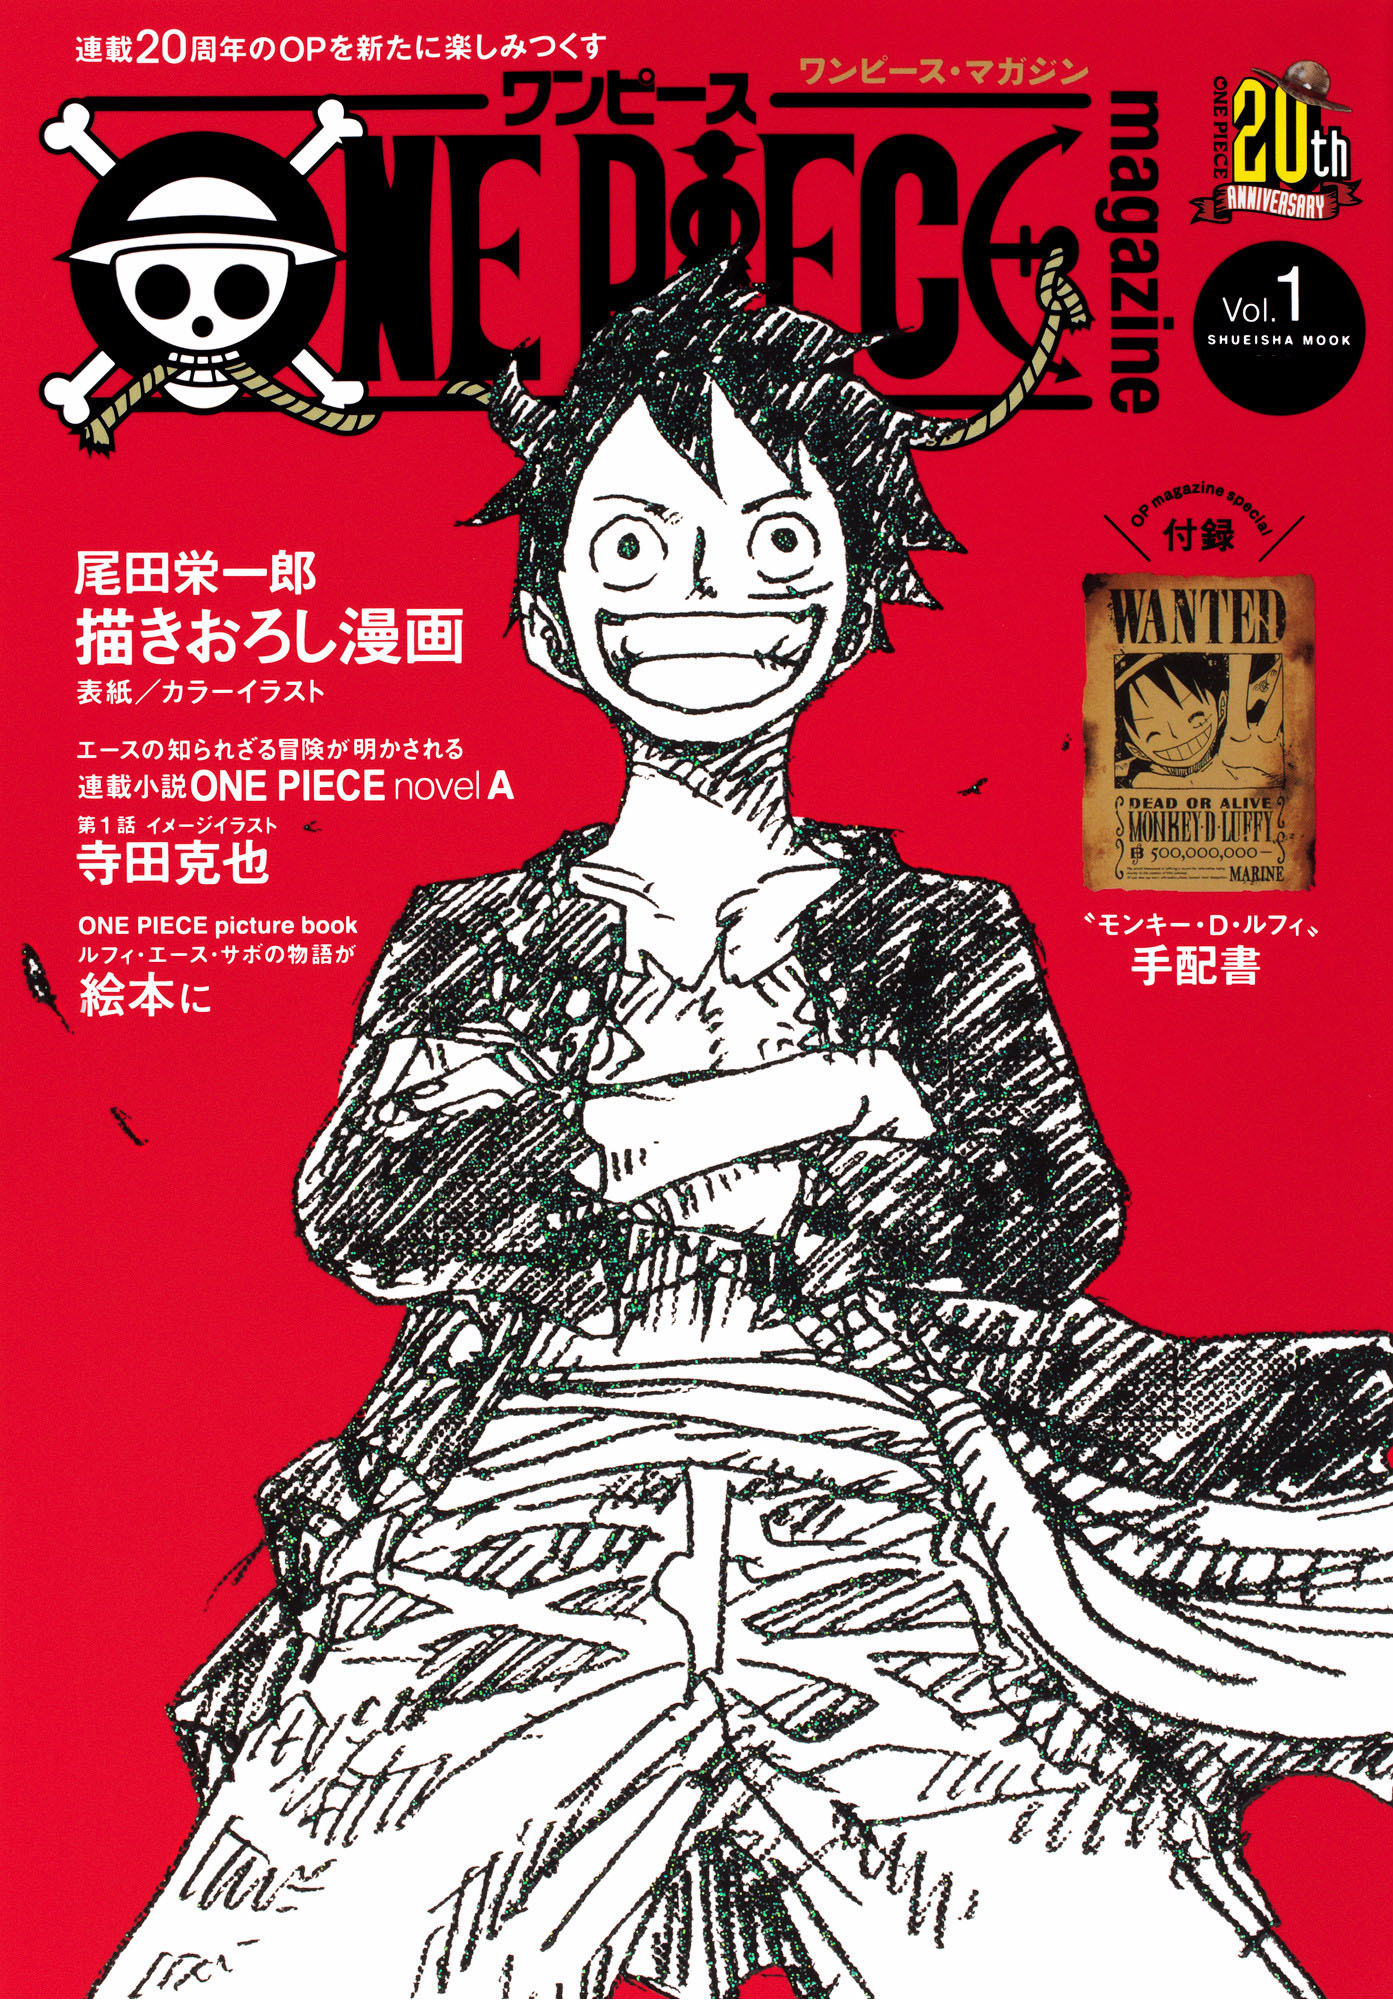 One Piece novel Straw Hat Stories, One Piece Wiki